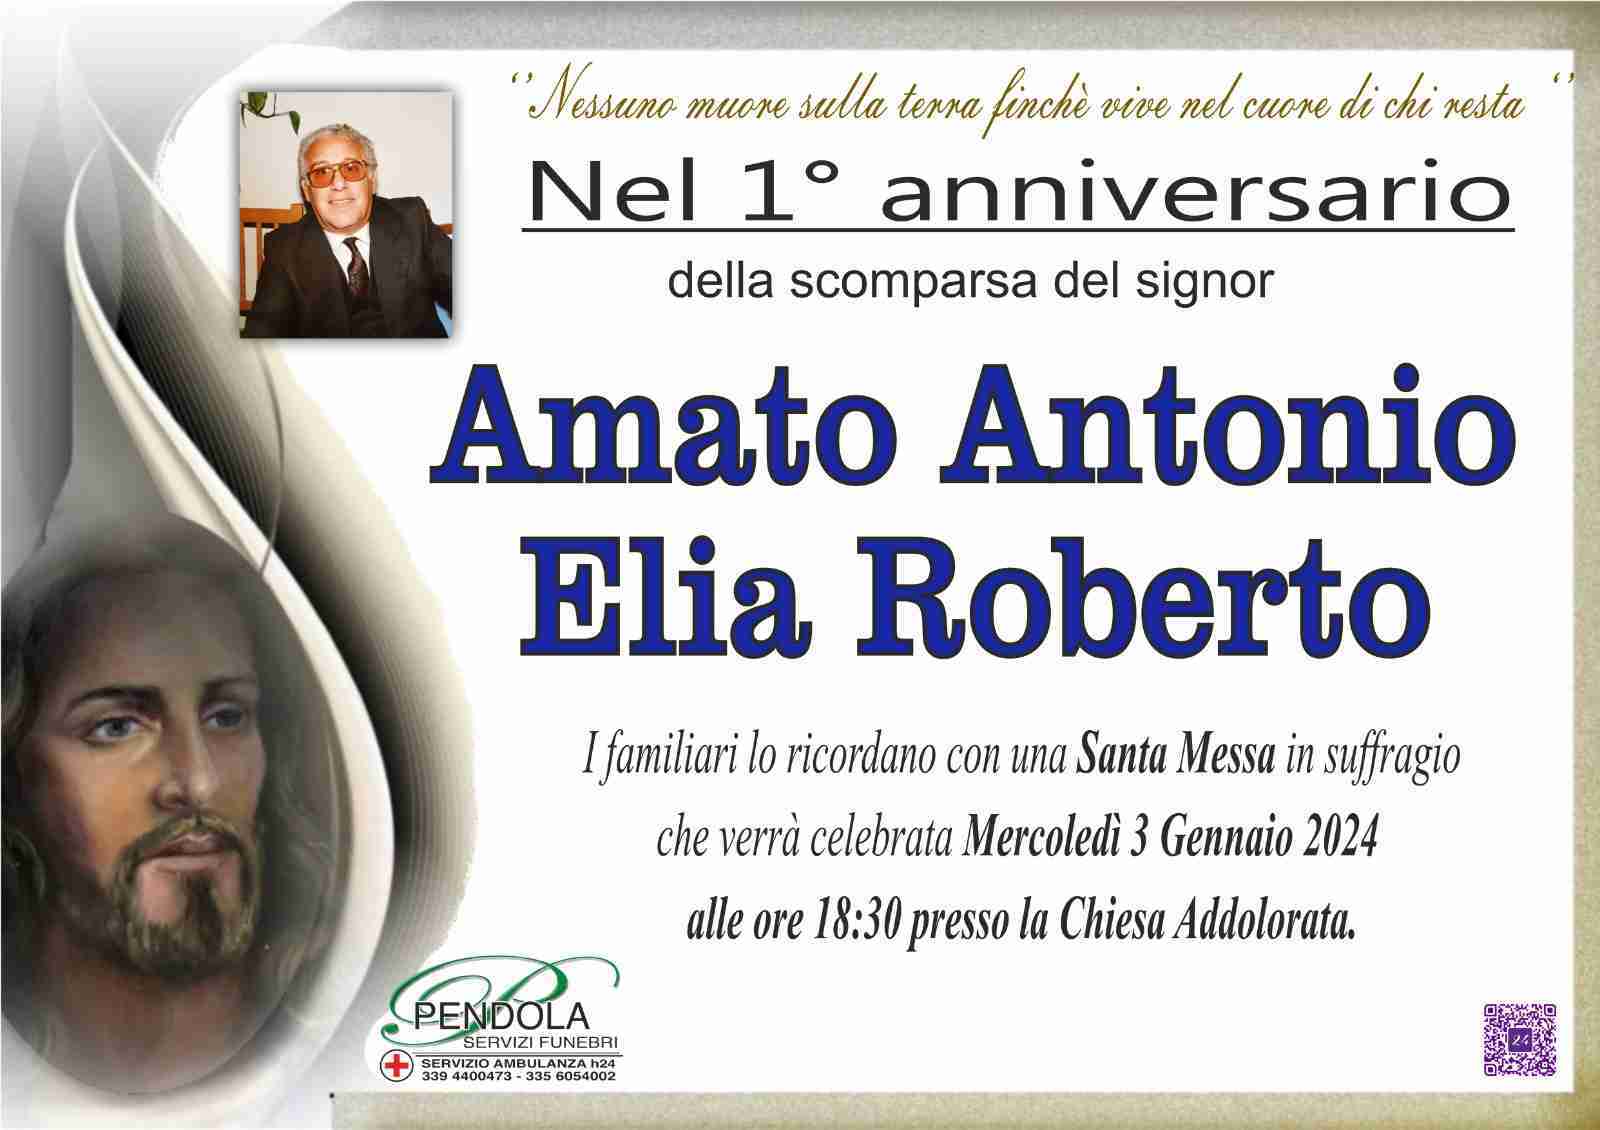 Amato Antonio Elia Roberto